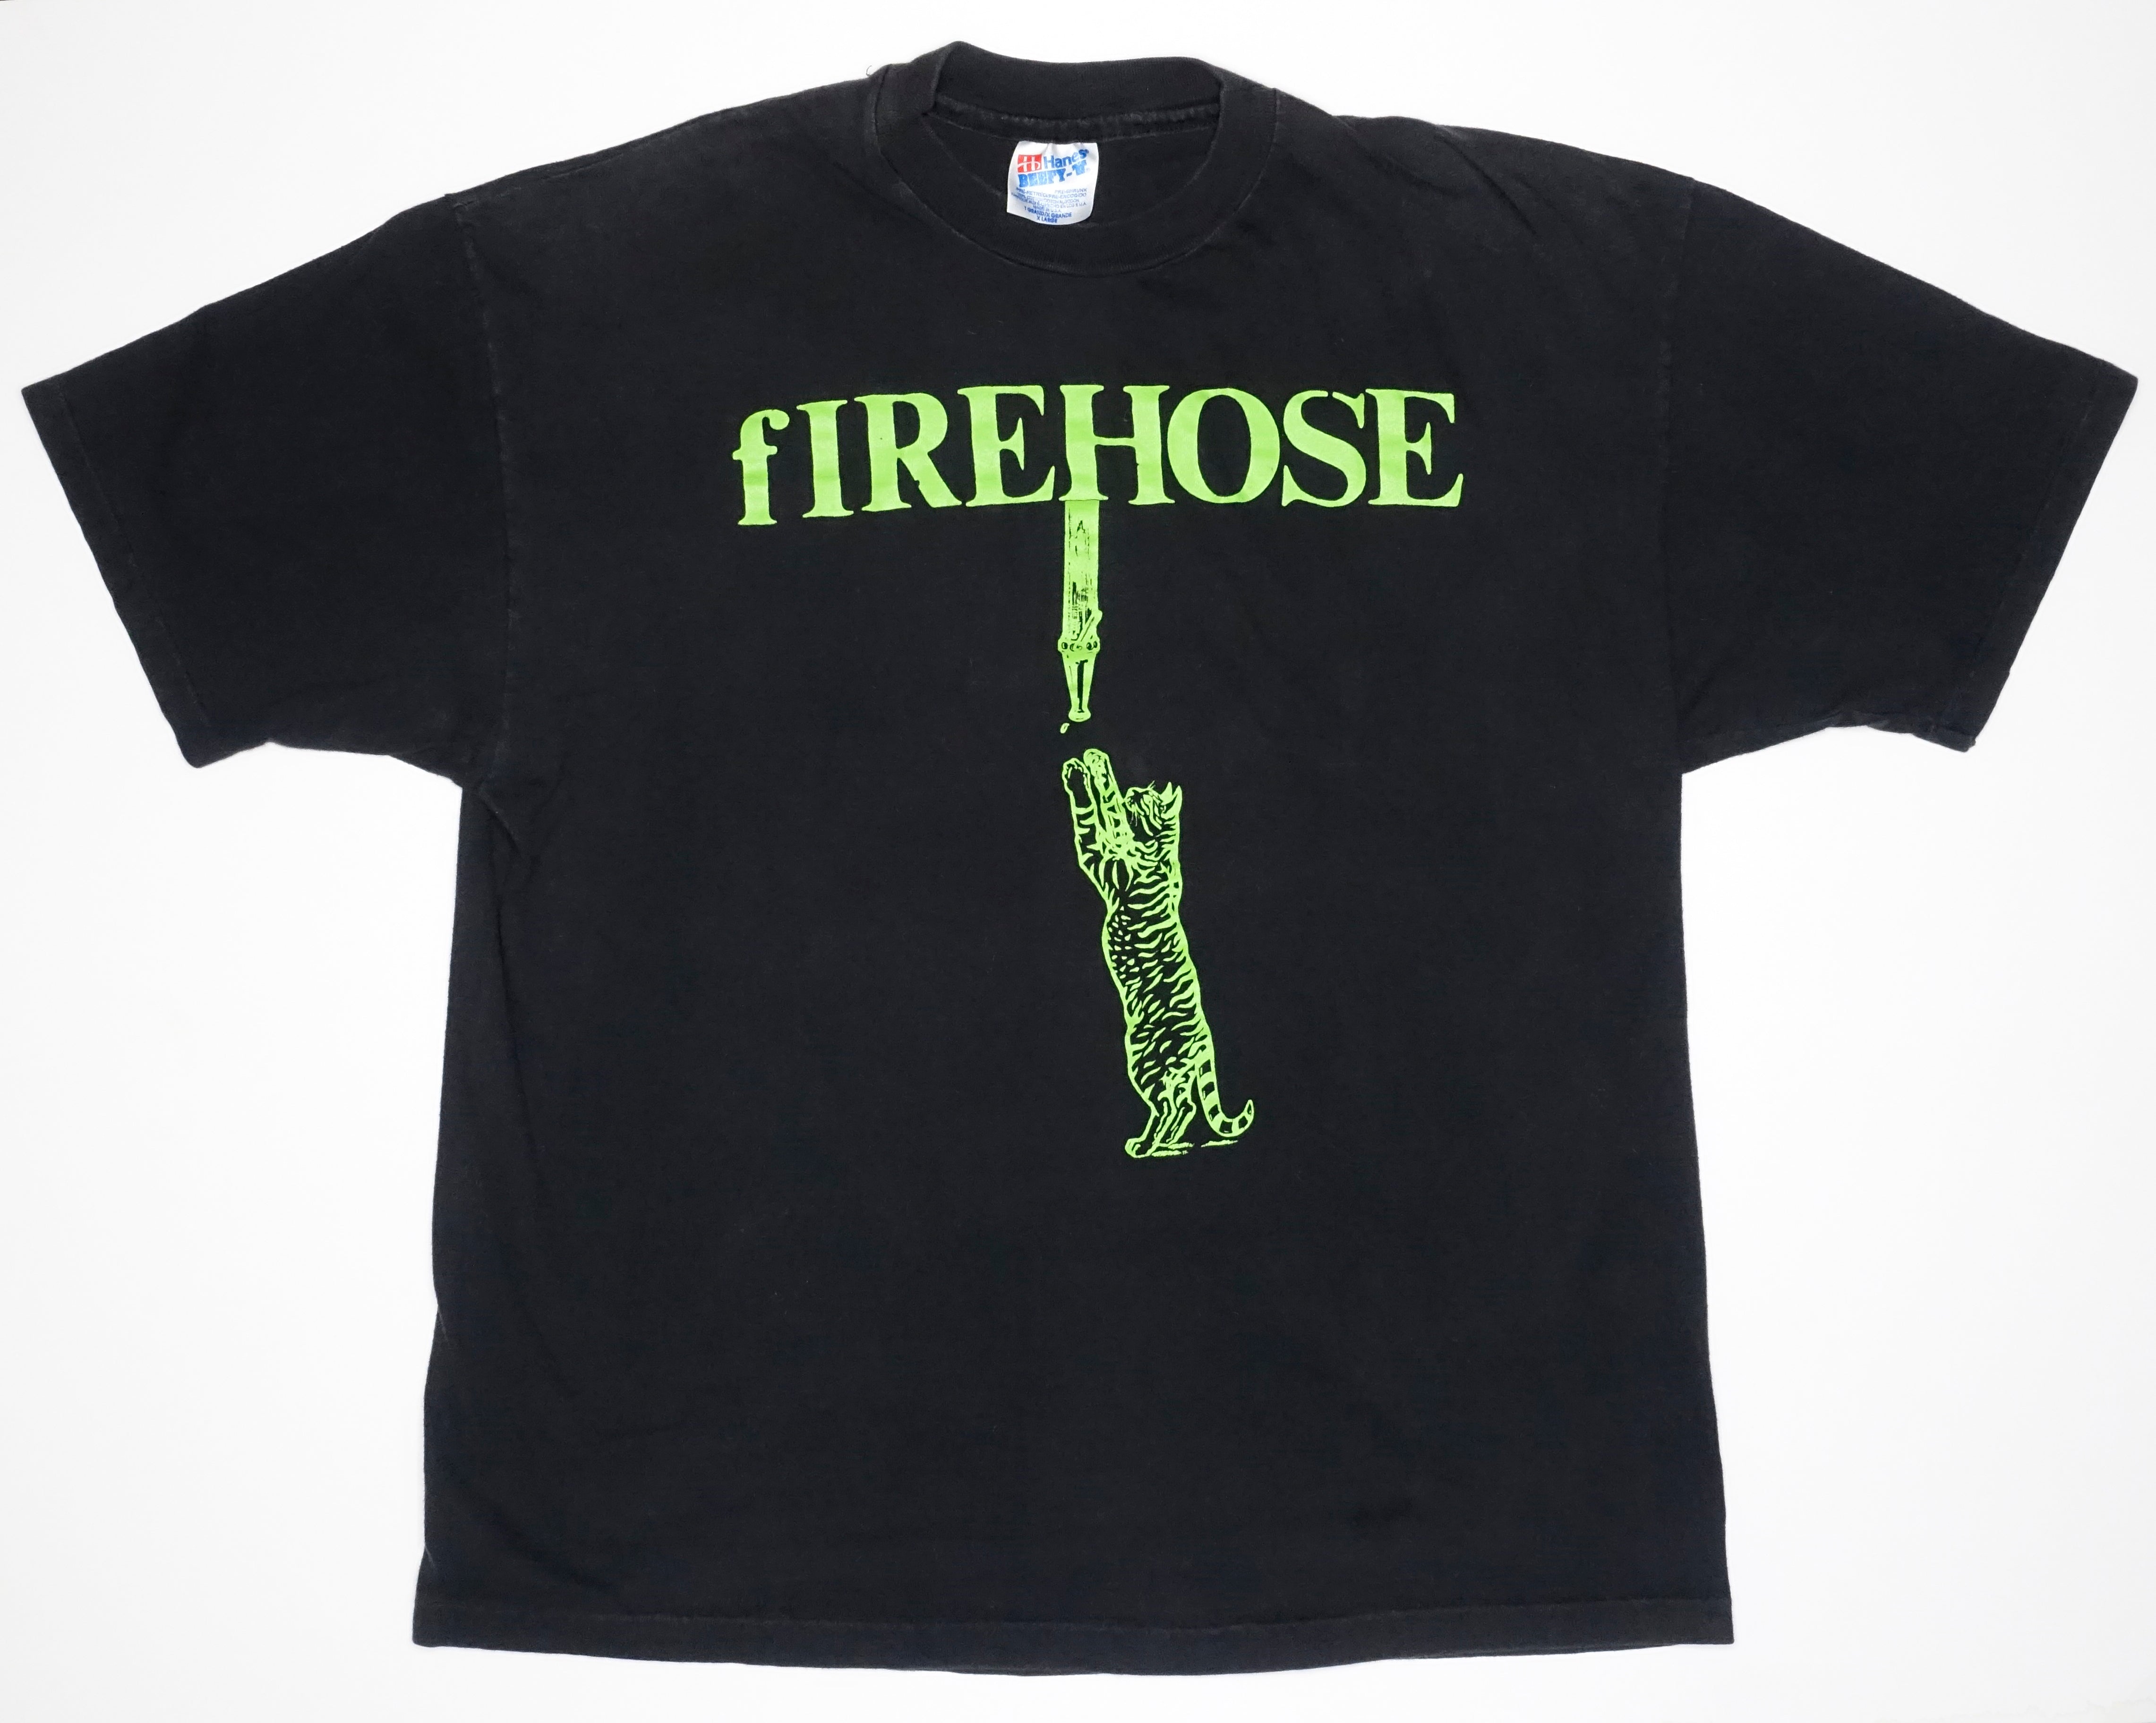 fIREHOSE - Cat & Hose Tour Shirt Size XL / Large